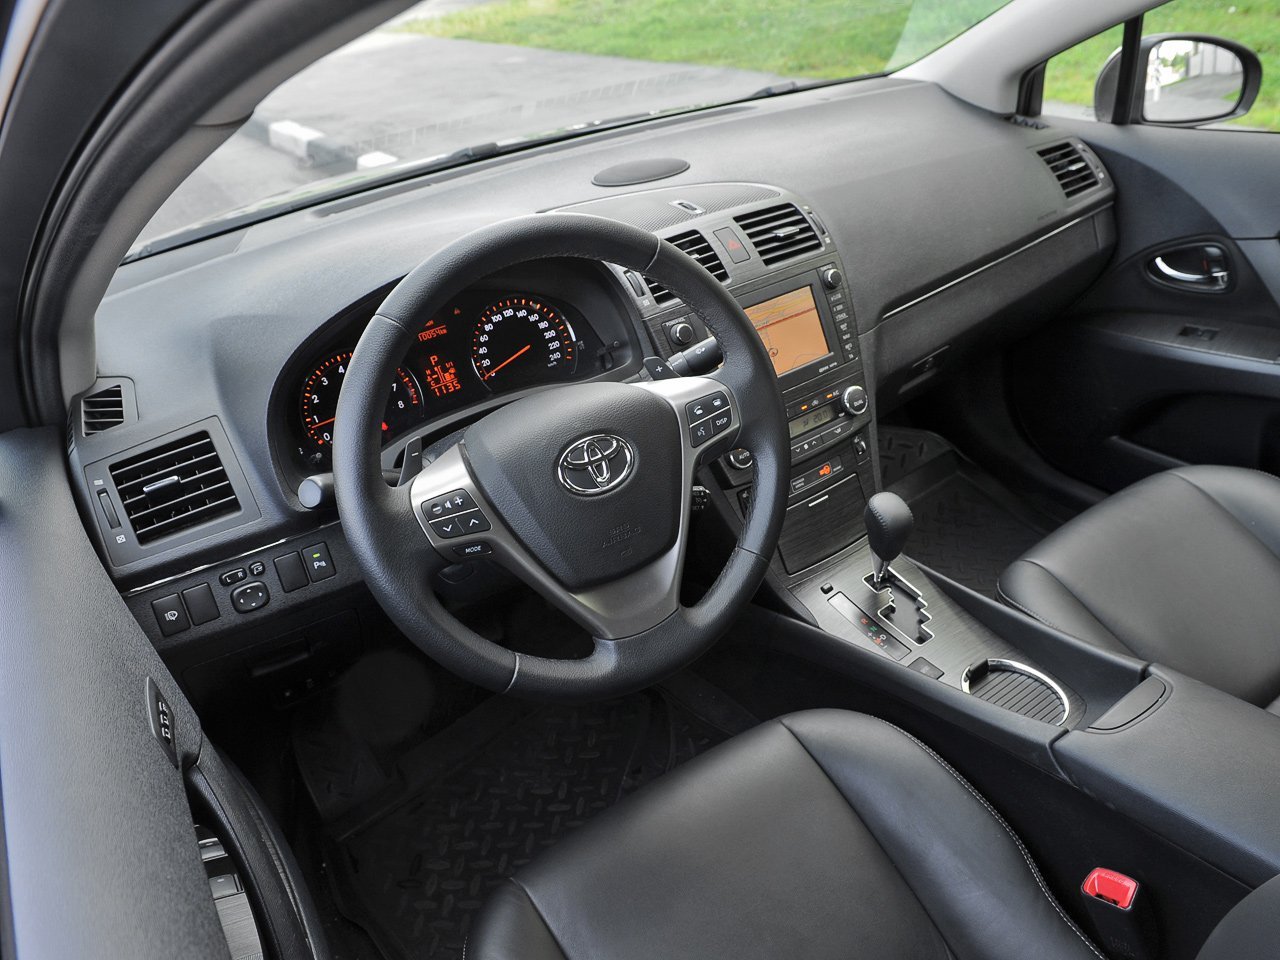 универсал Toyota Avensis 2009 - 2011г выпуска модификация Люкс 2.0 CVT (152 л.с.)